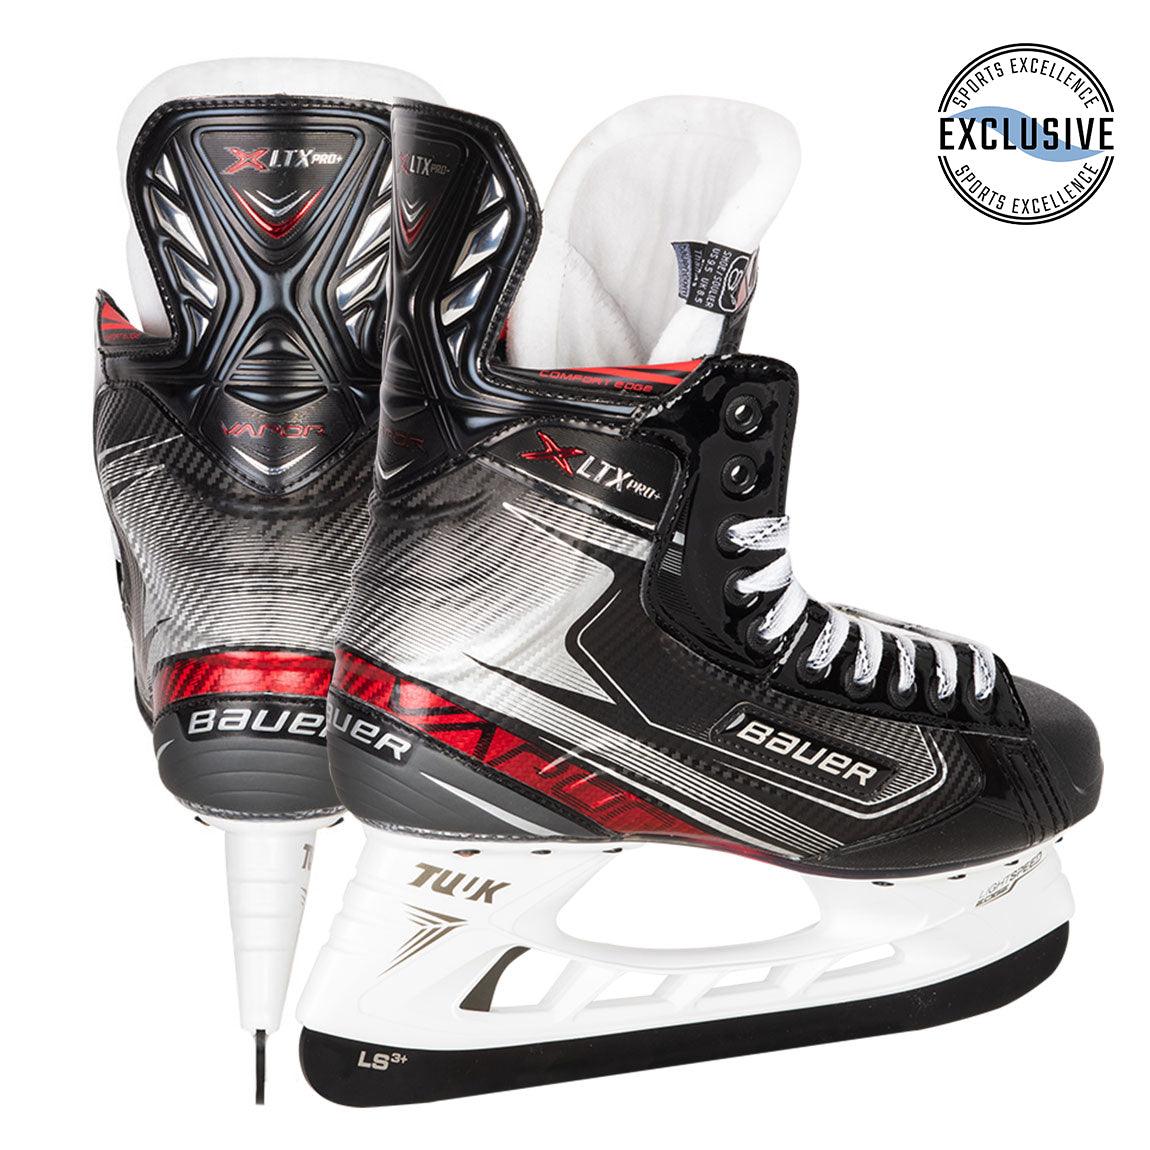 Senior Vapor LTX Pro+ Hockey Skates by Bauer